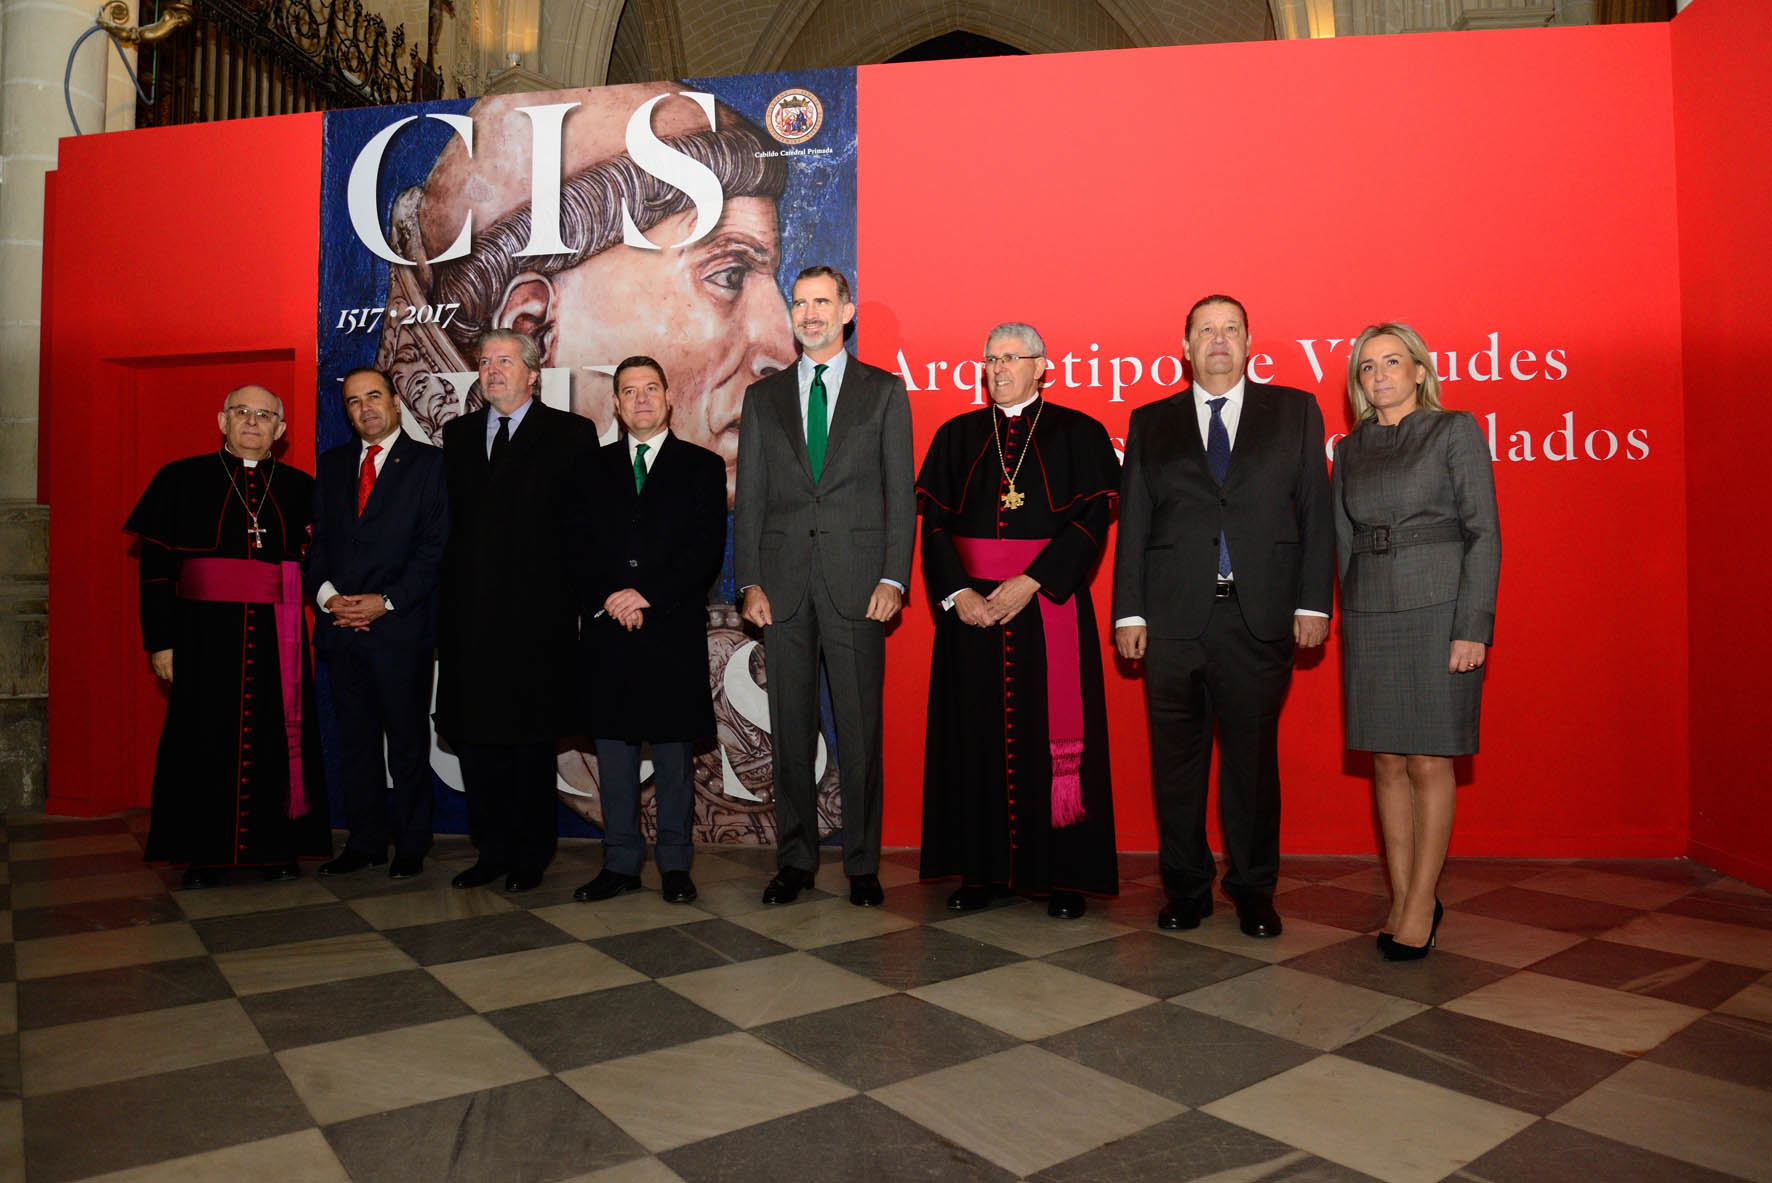 El Rey Felipe VI visita la exposición de Cisneros en la Catedral de Toledo